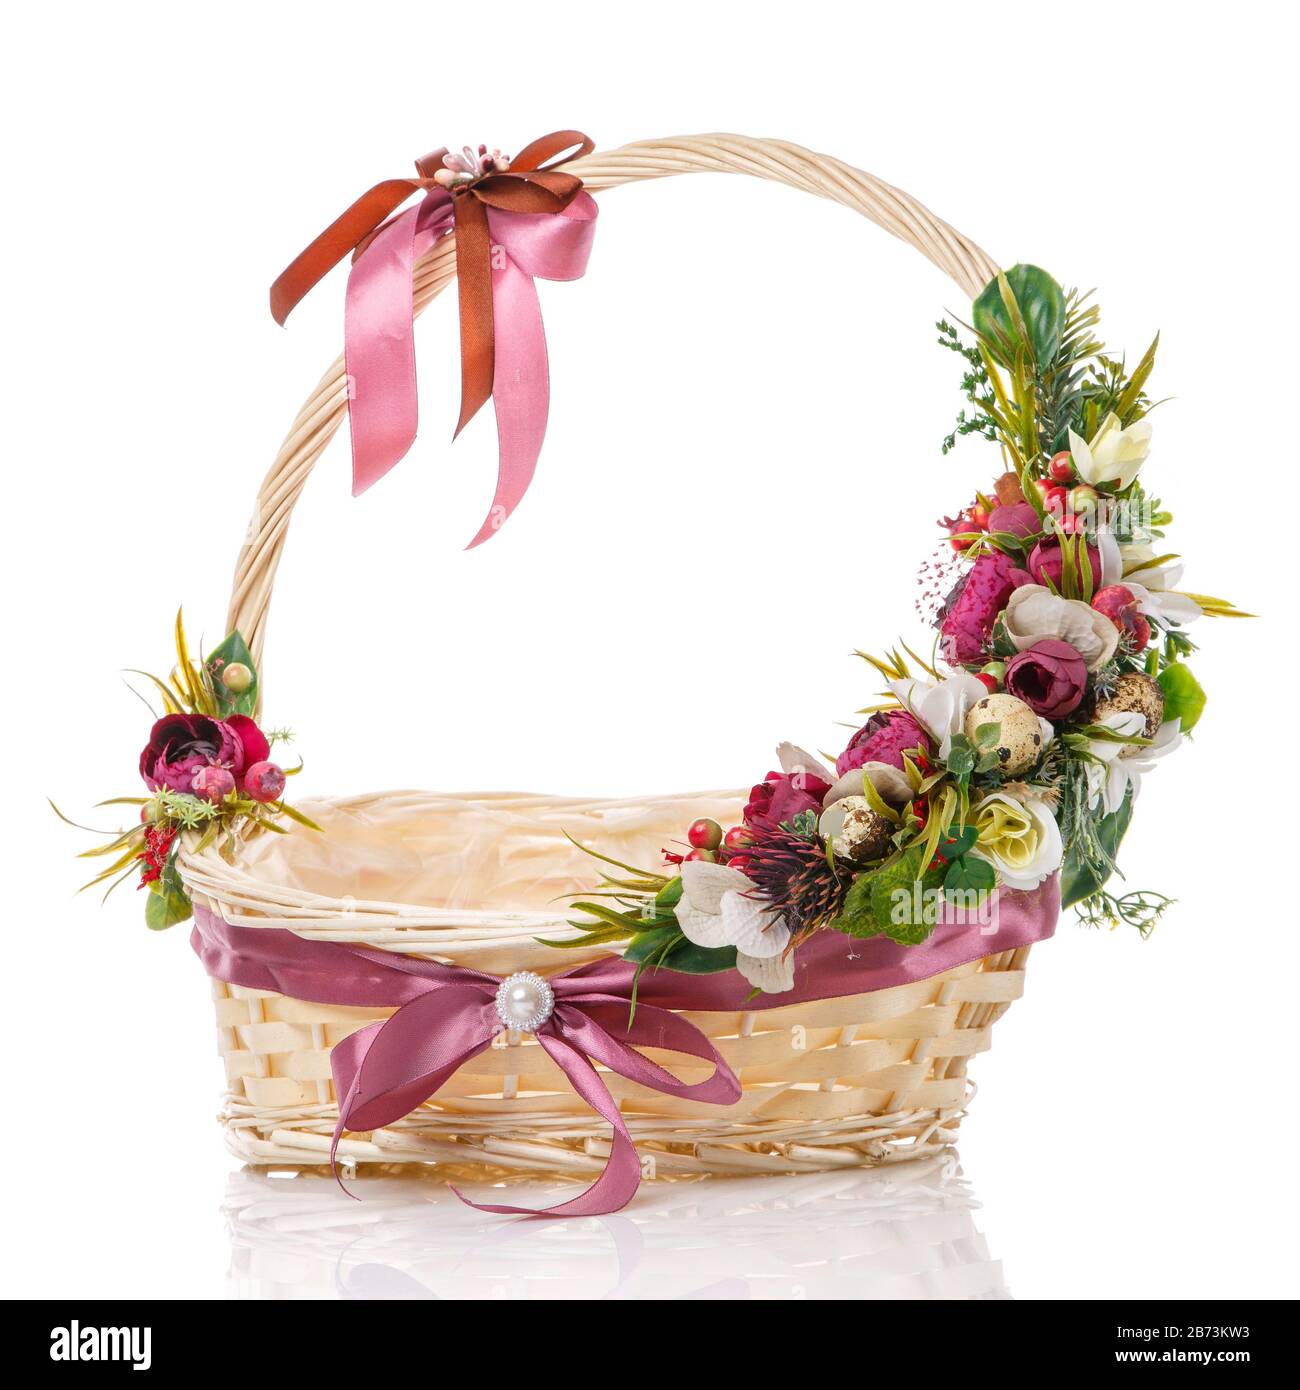 Décor fleuri sur la poignée d'un panier en osier. Décoration avec fleurs  roses et blanches, verts, œufs de caille et noeuds en ruban sur fond blanc  Photo Stock - Alamy